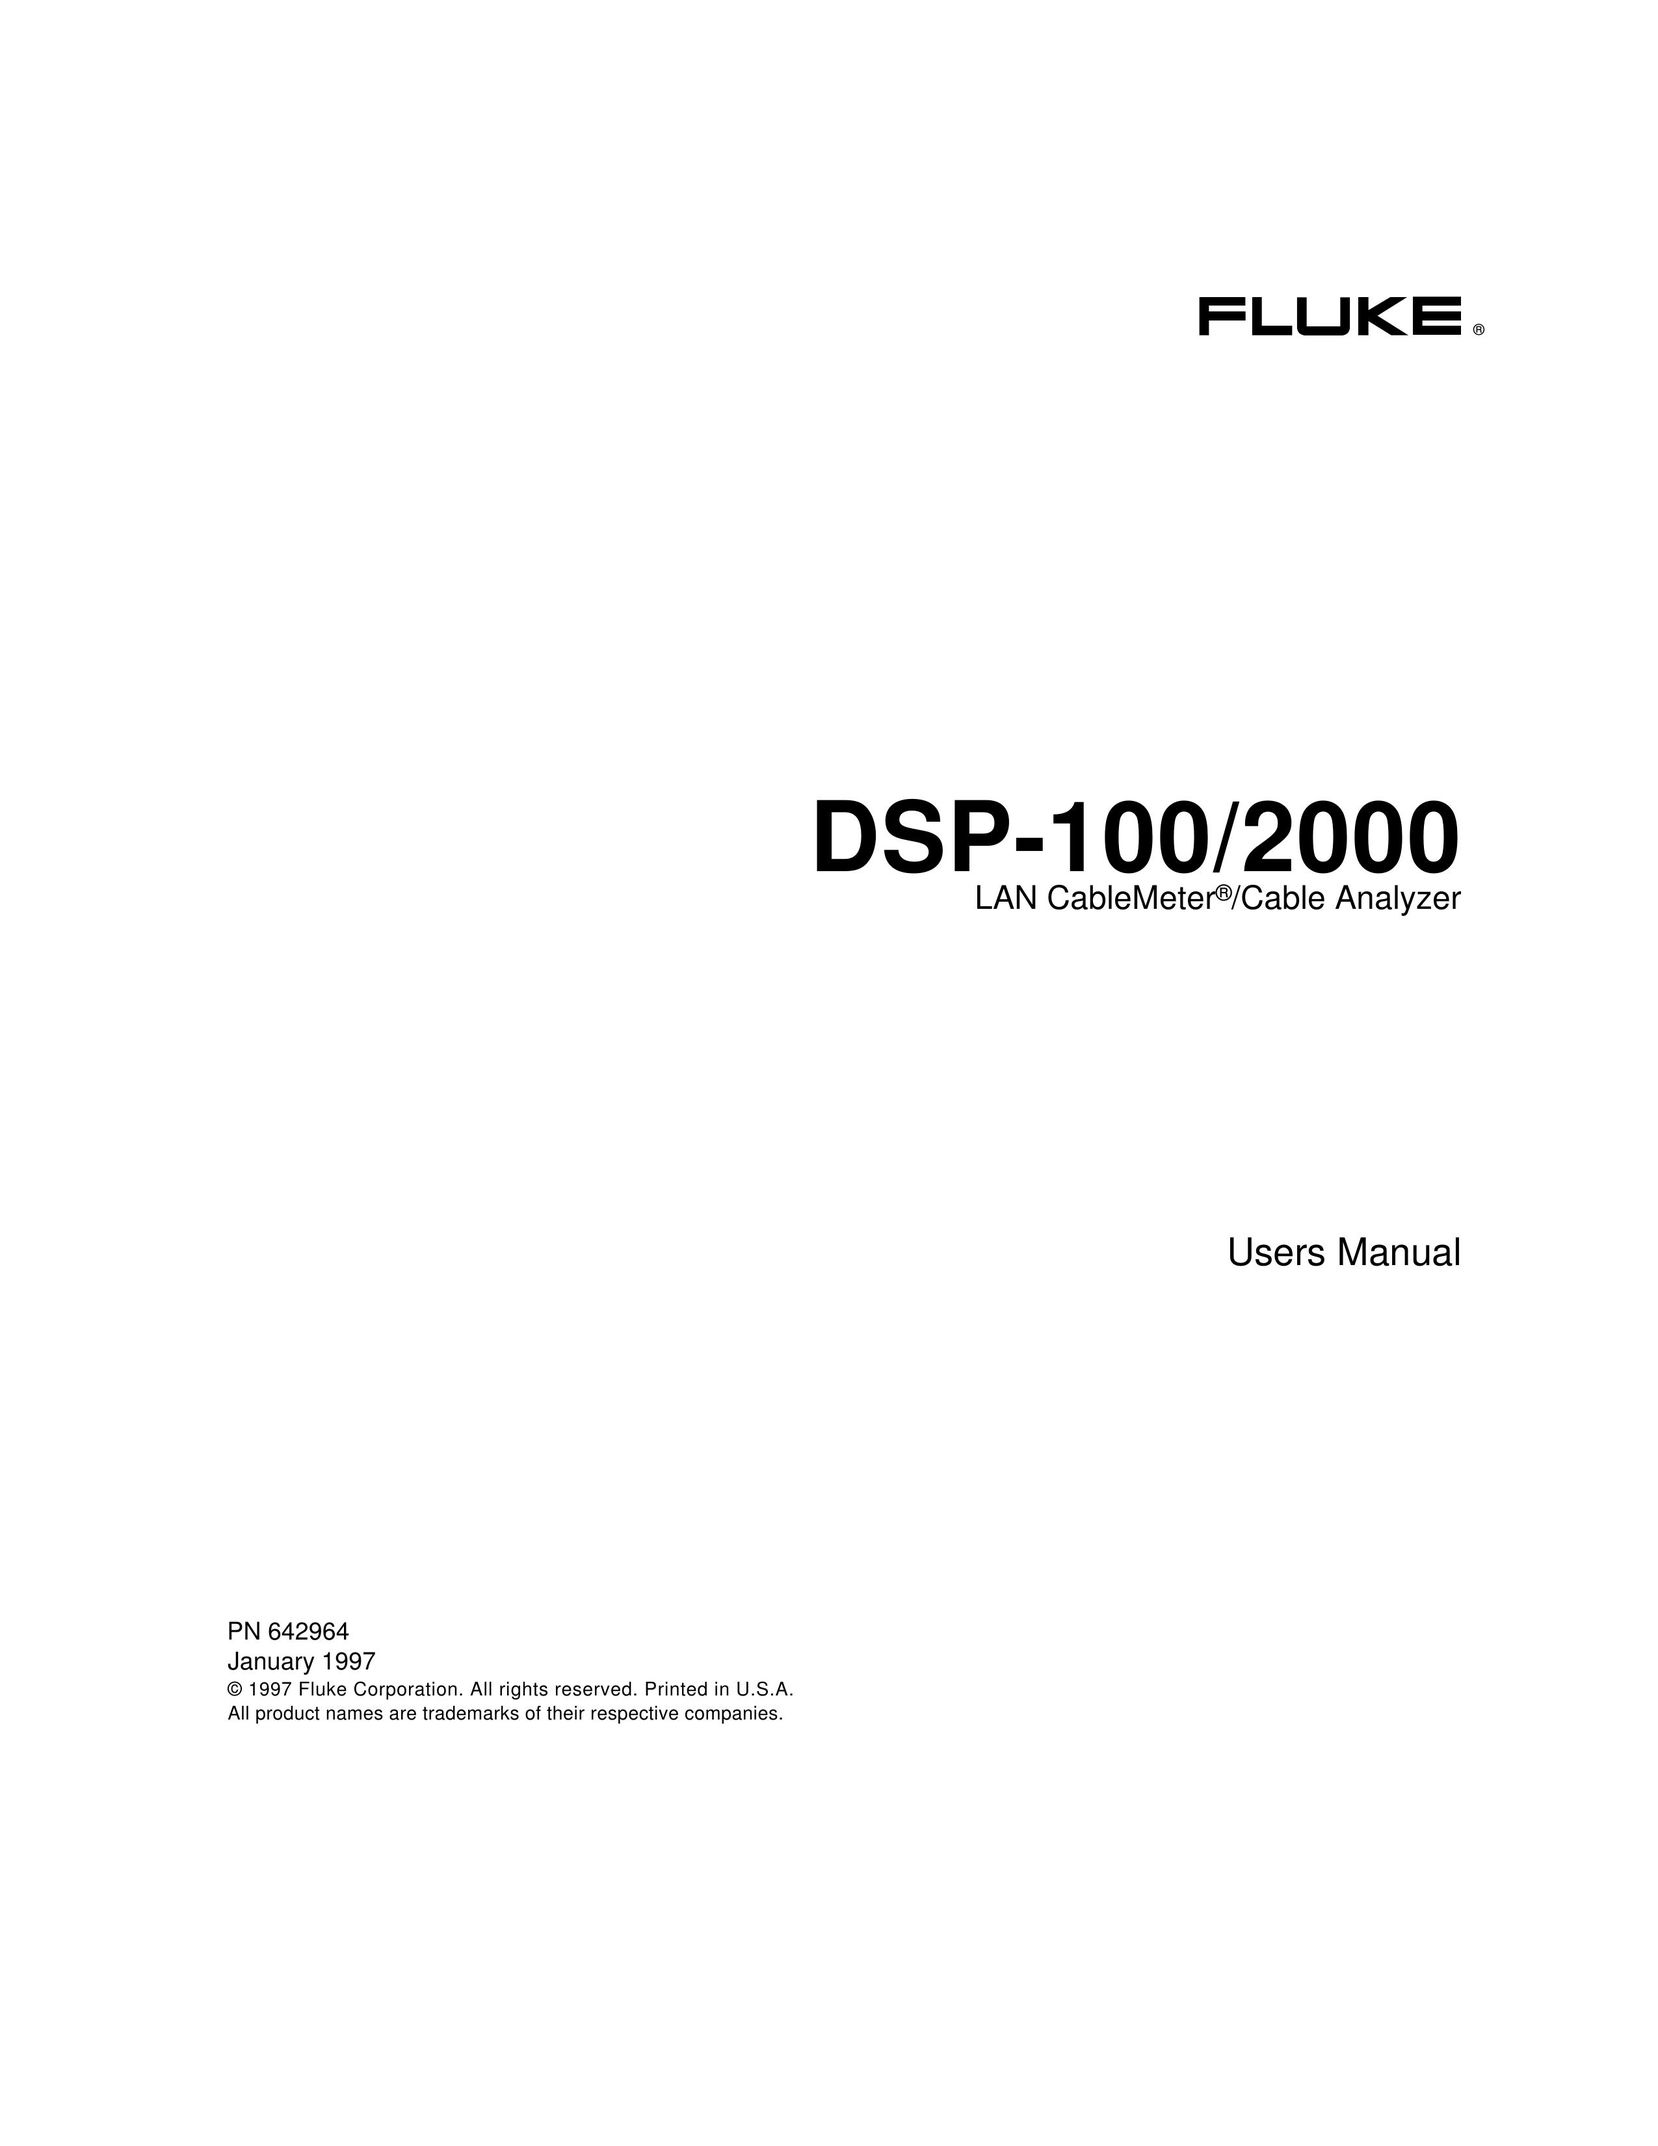 Fluke DSP-100 Network Card User Manual